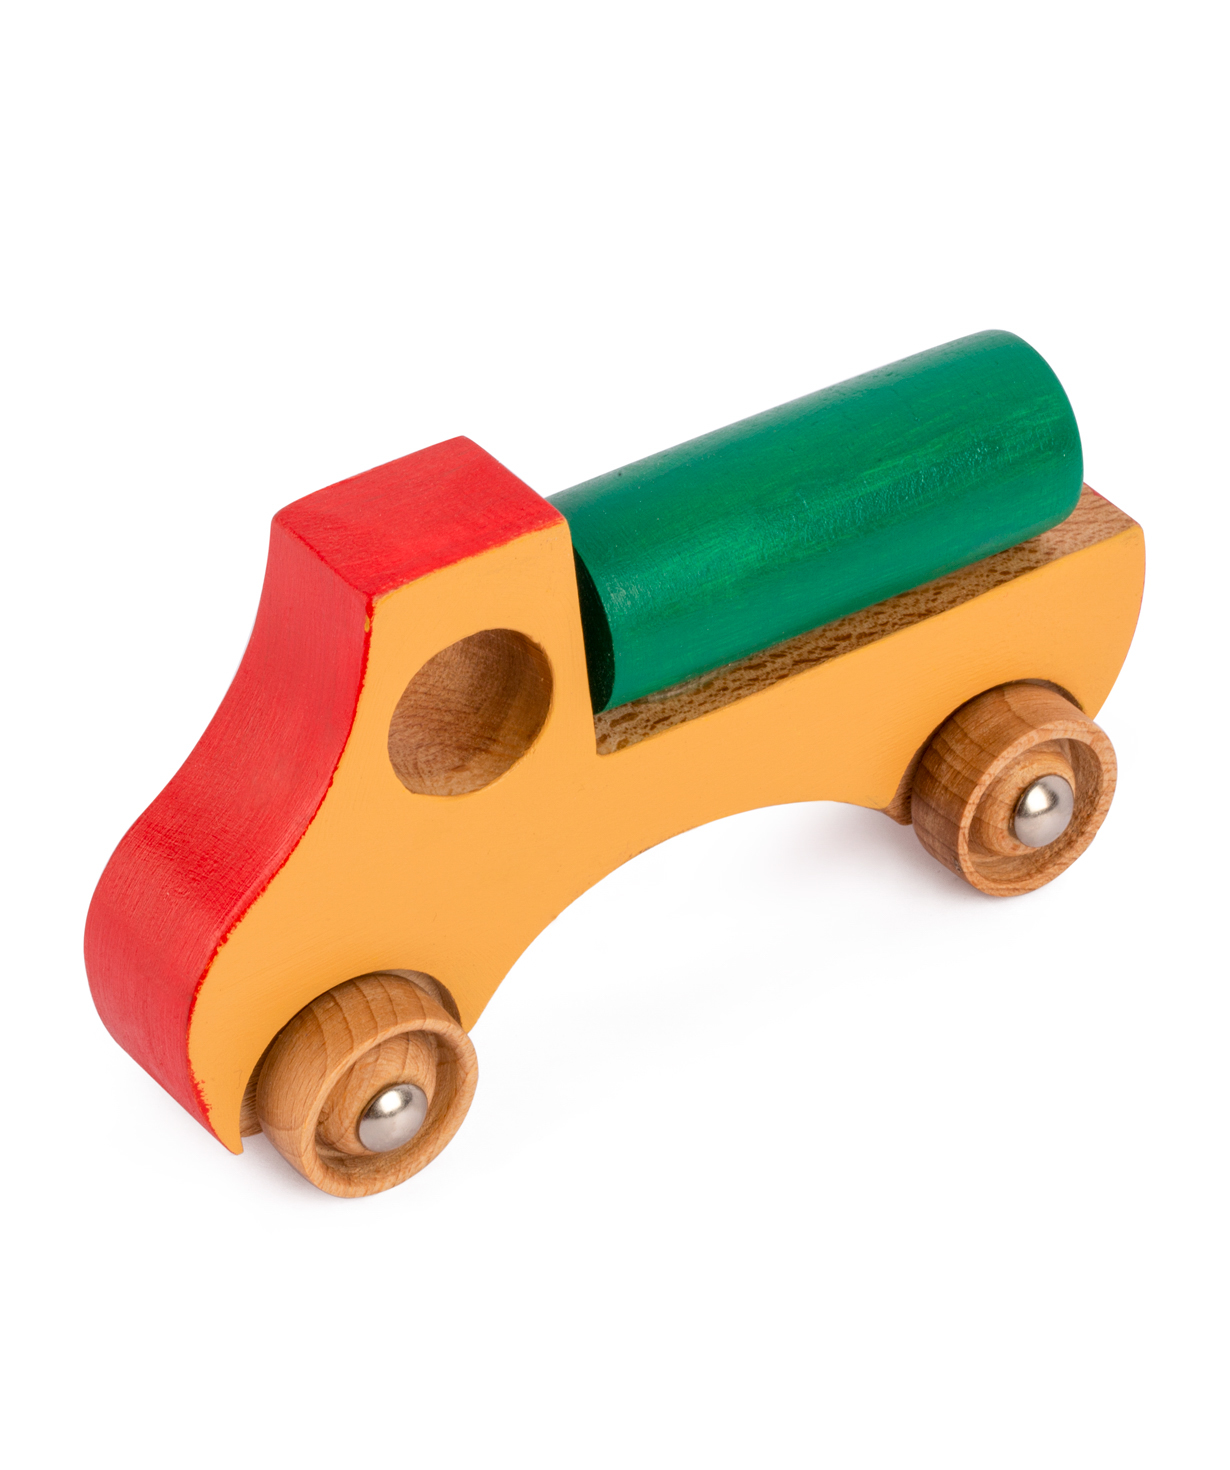 Խաղալիք «I'm wooden toys» փայտե մեքենա մեծ